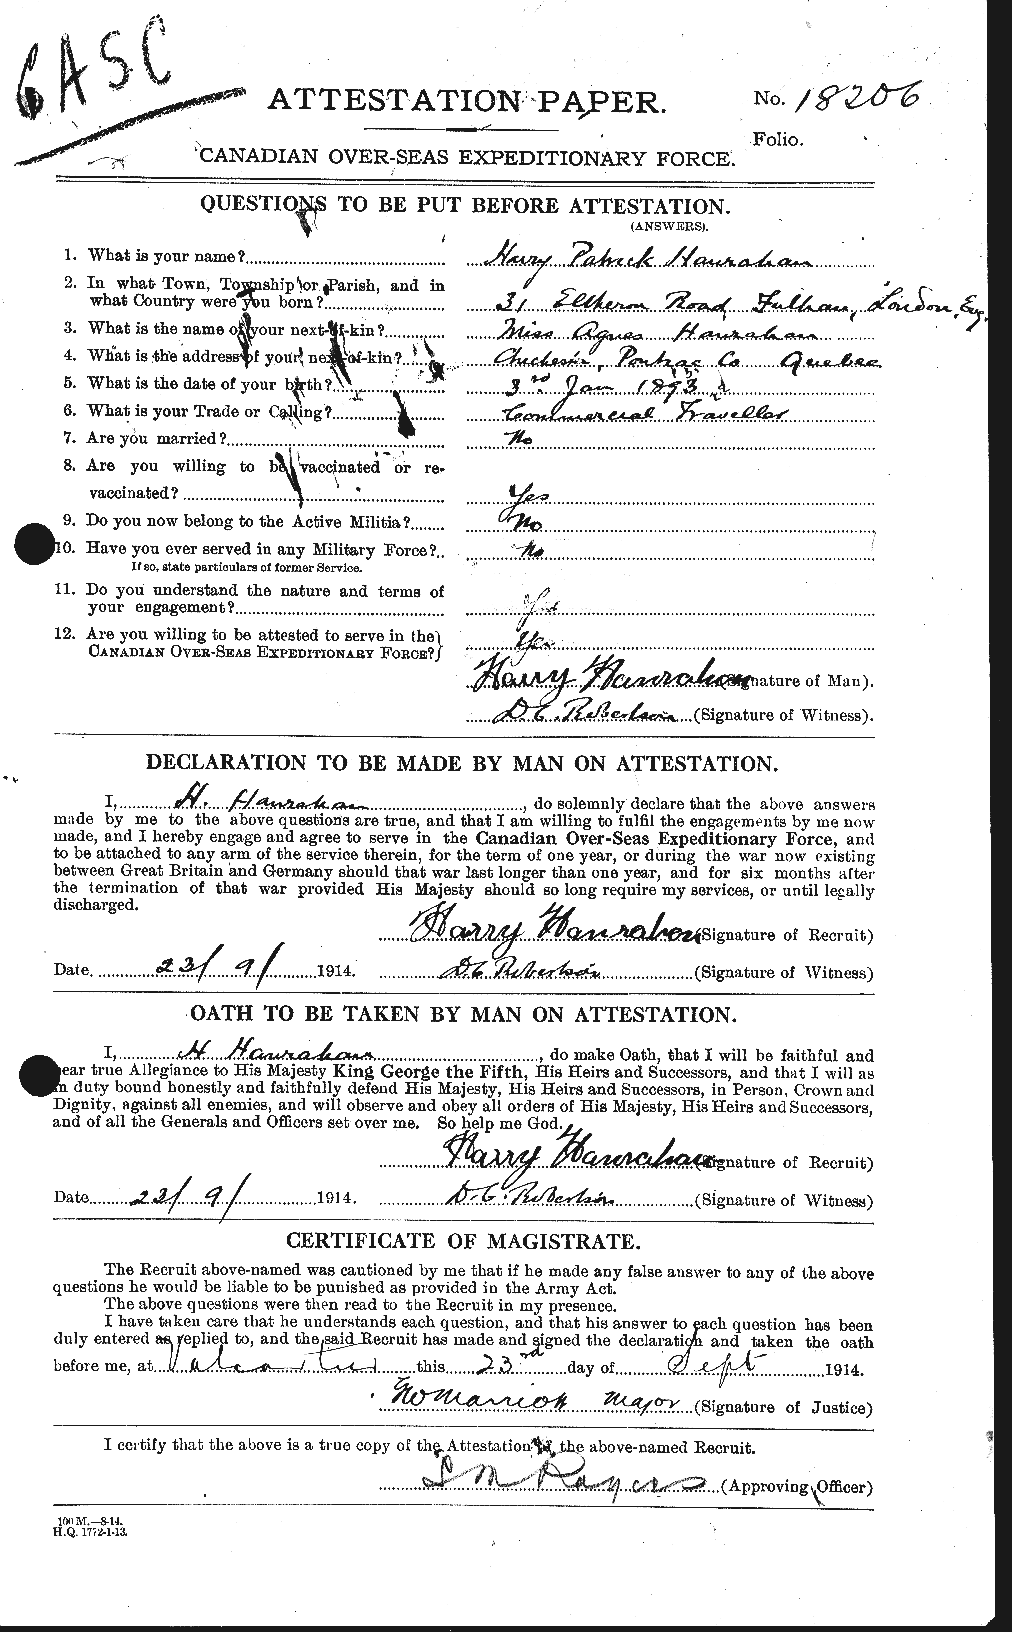 Dossiers du Personnel de la Première Guerre mondiale - CEC 378551a